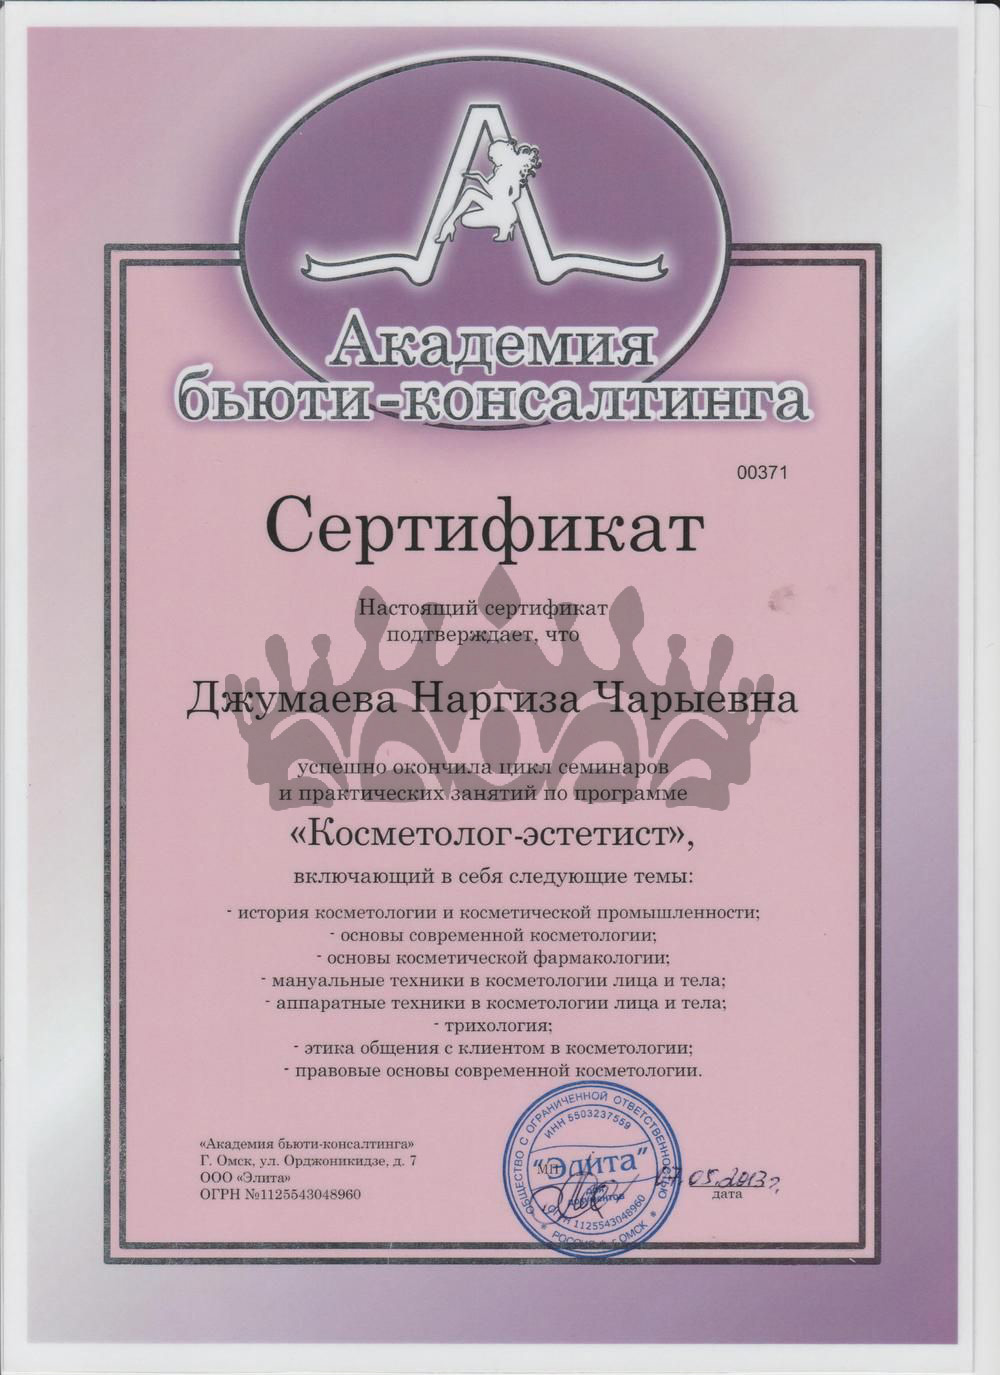 Сертификат Джумаева Н.Ч. - Косметолог-эстетист